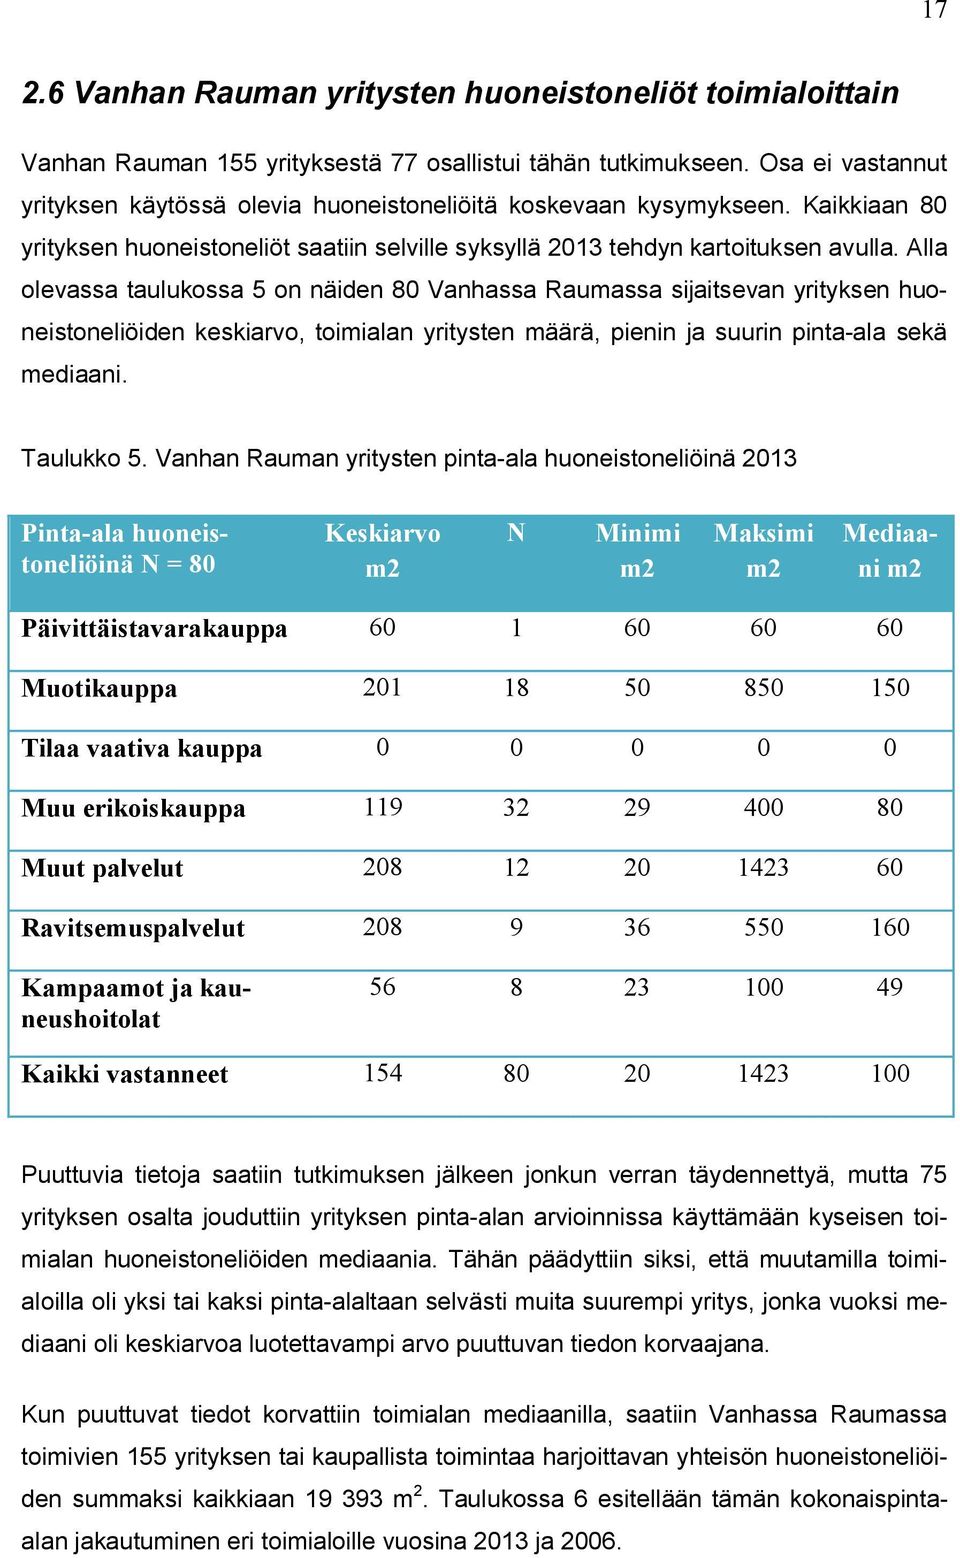 Alla olevassa taulukossa 5 on näiden 80 Vanhassa Raumassa sijaitsevan yrityksen huoneistoneliöiden keskiarvo, toimialan yritysten määrä, pienin ja suurin pinta-ala sekä mediaani. Taulukko 5.